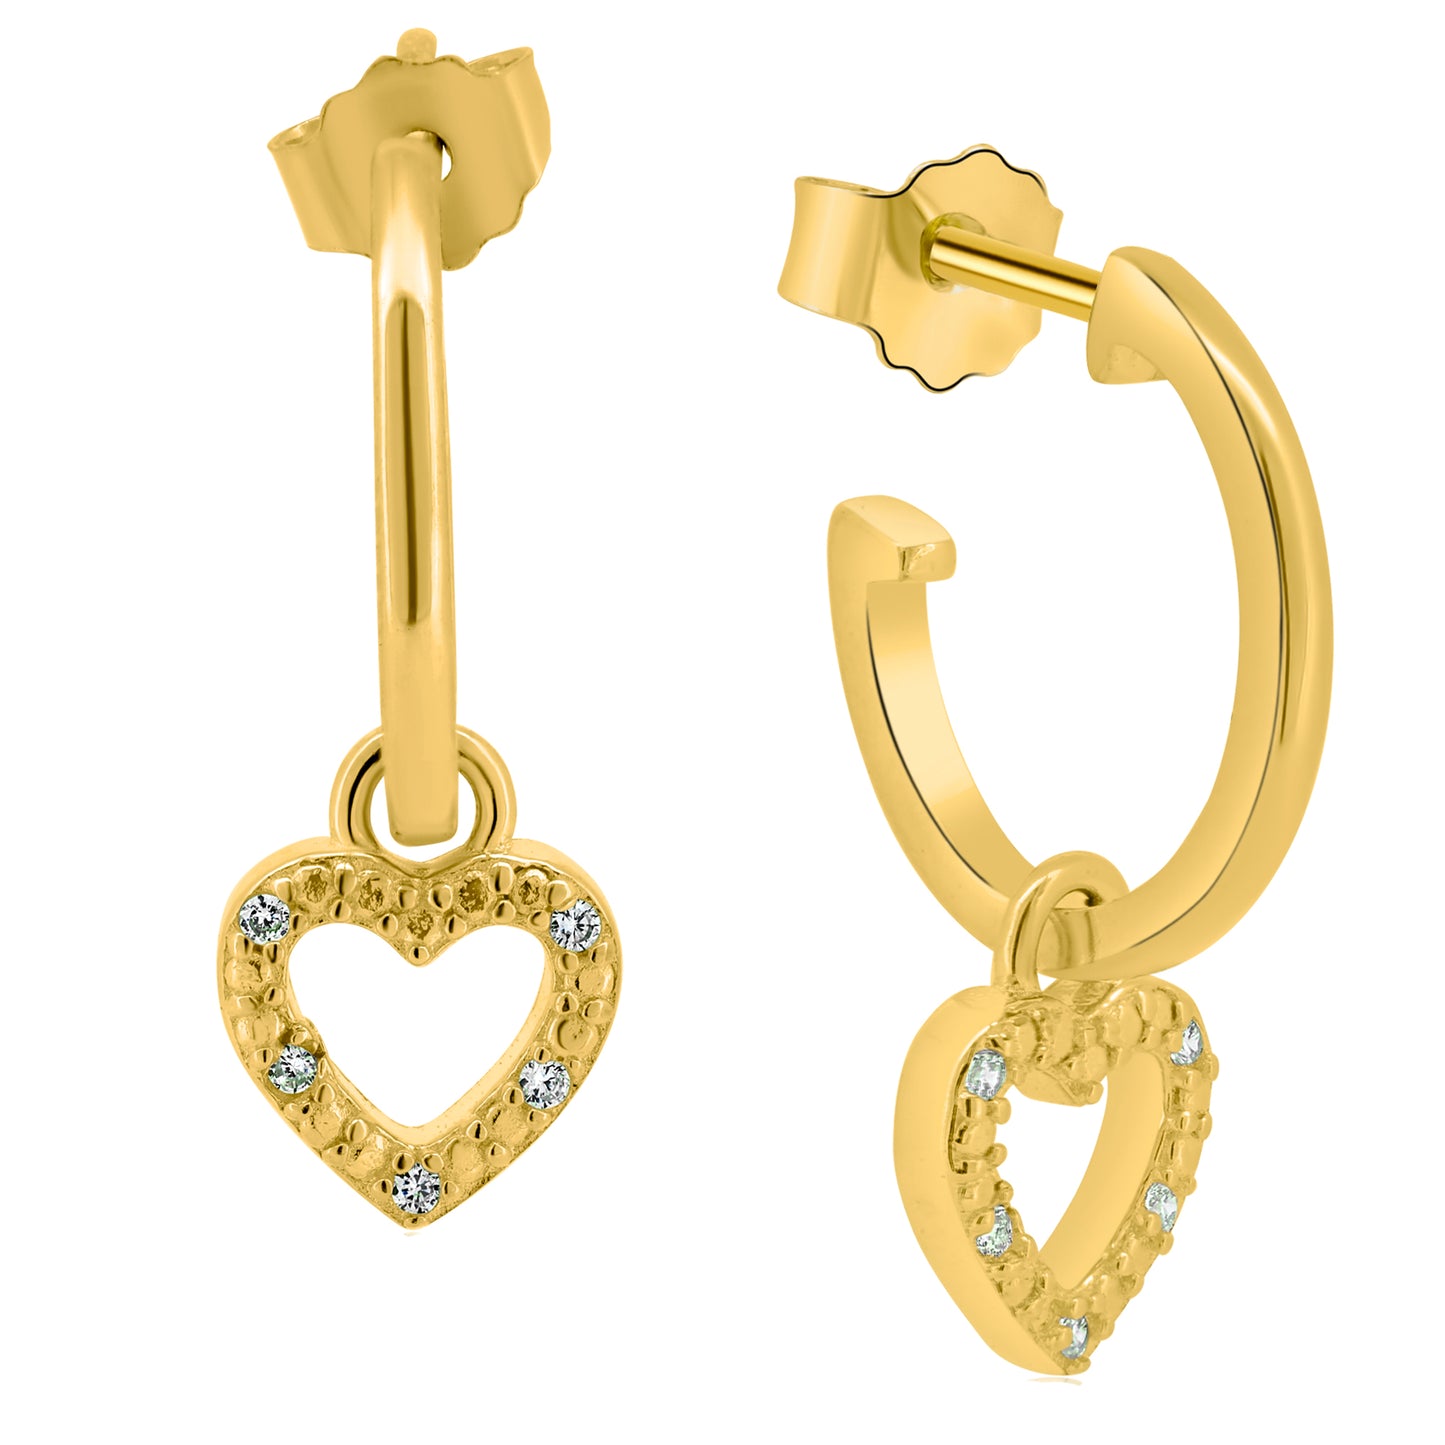 Sterling Silver Heart Dangle Earrings, CZ Design, Half Hoops, Push Backing, Hollow Heart Earrings